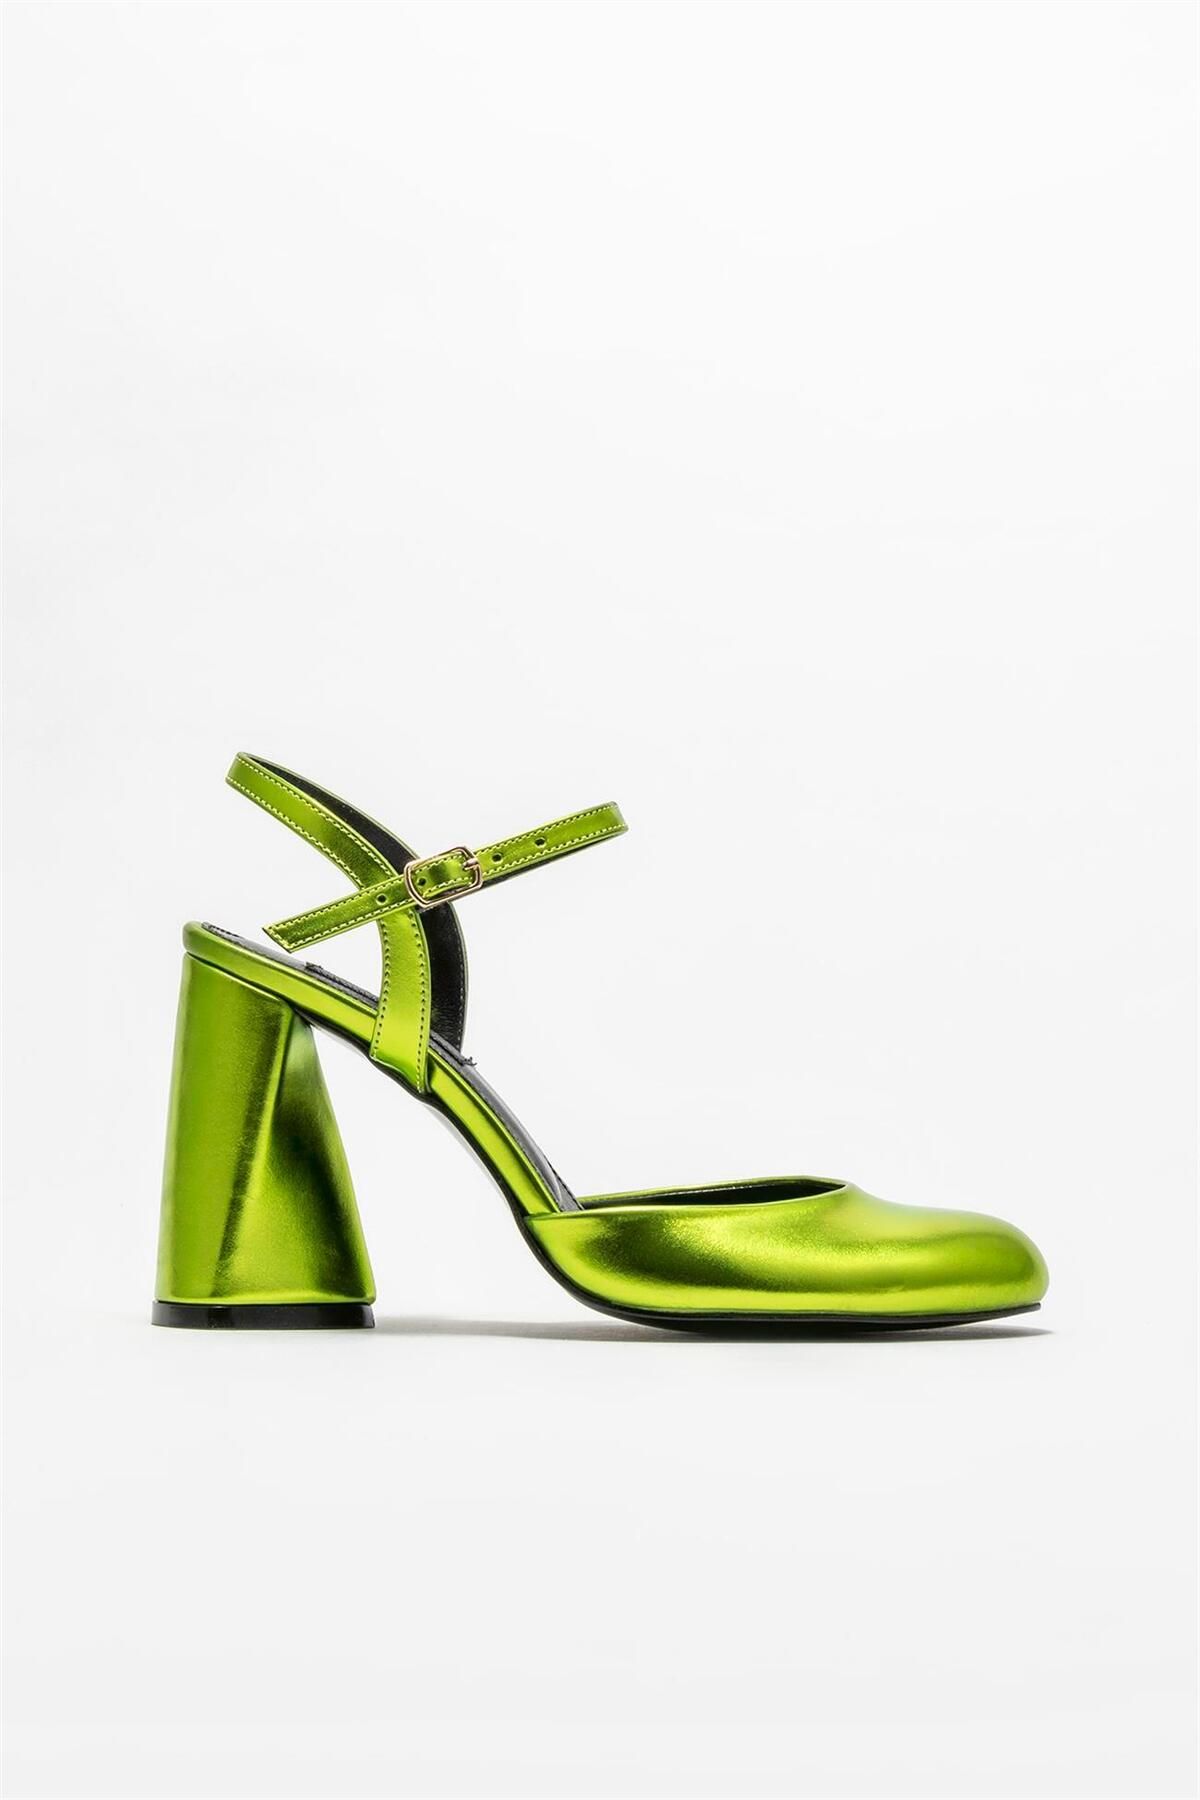 Elle Yeşil Kadın Topuklu Ayakkabı